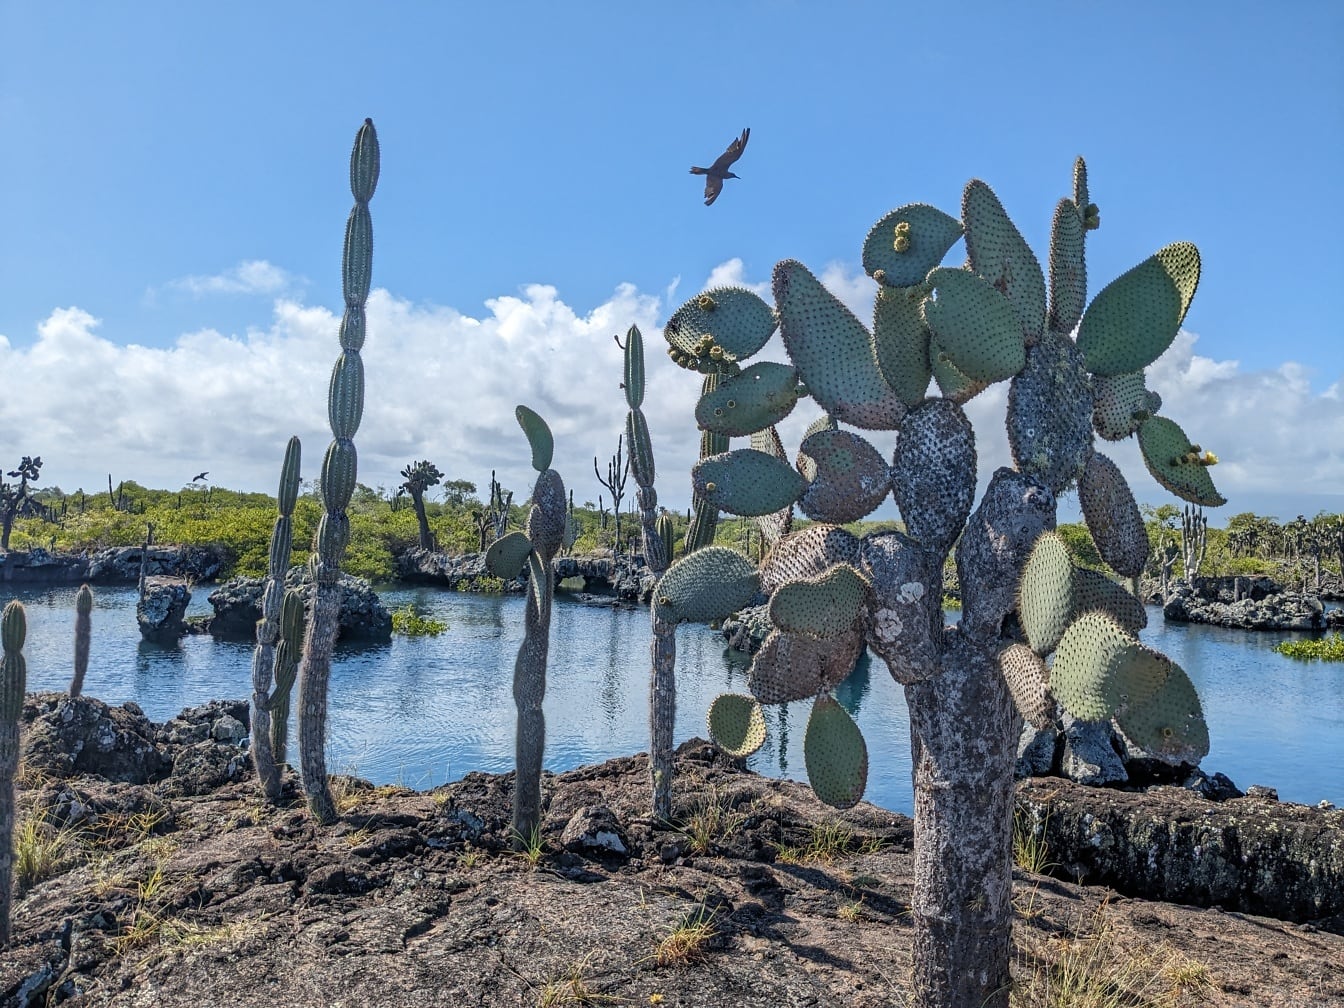 Opuncja figowa (Opuntia galapageia) subtropikalnym gatunkiem kaktusa endemicznym dla Galapagos